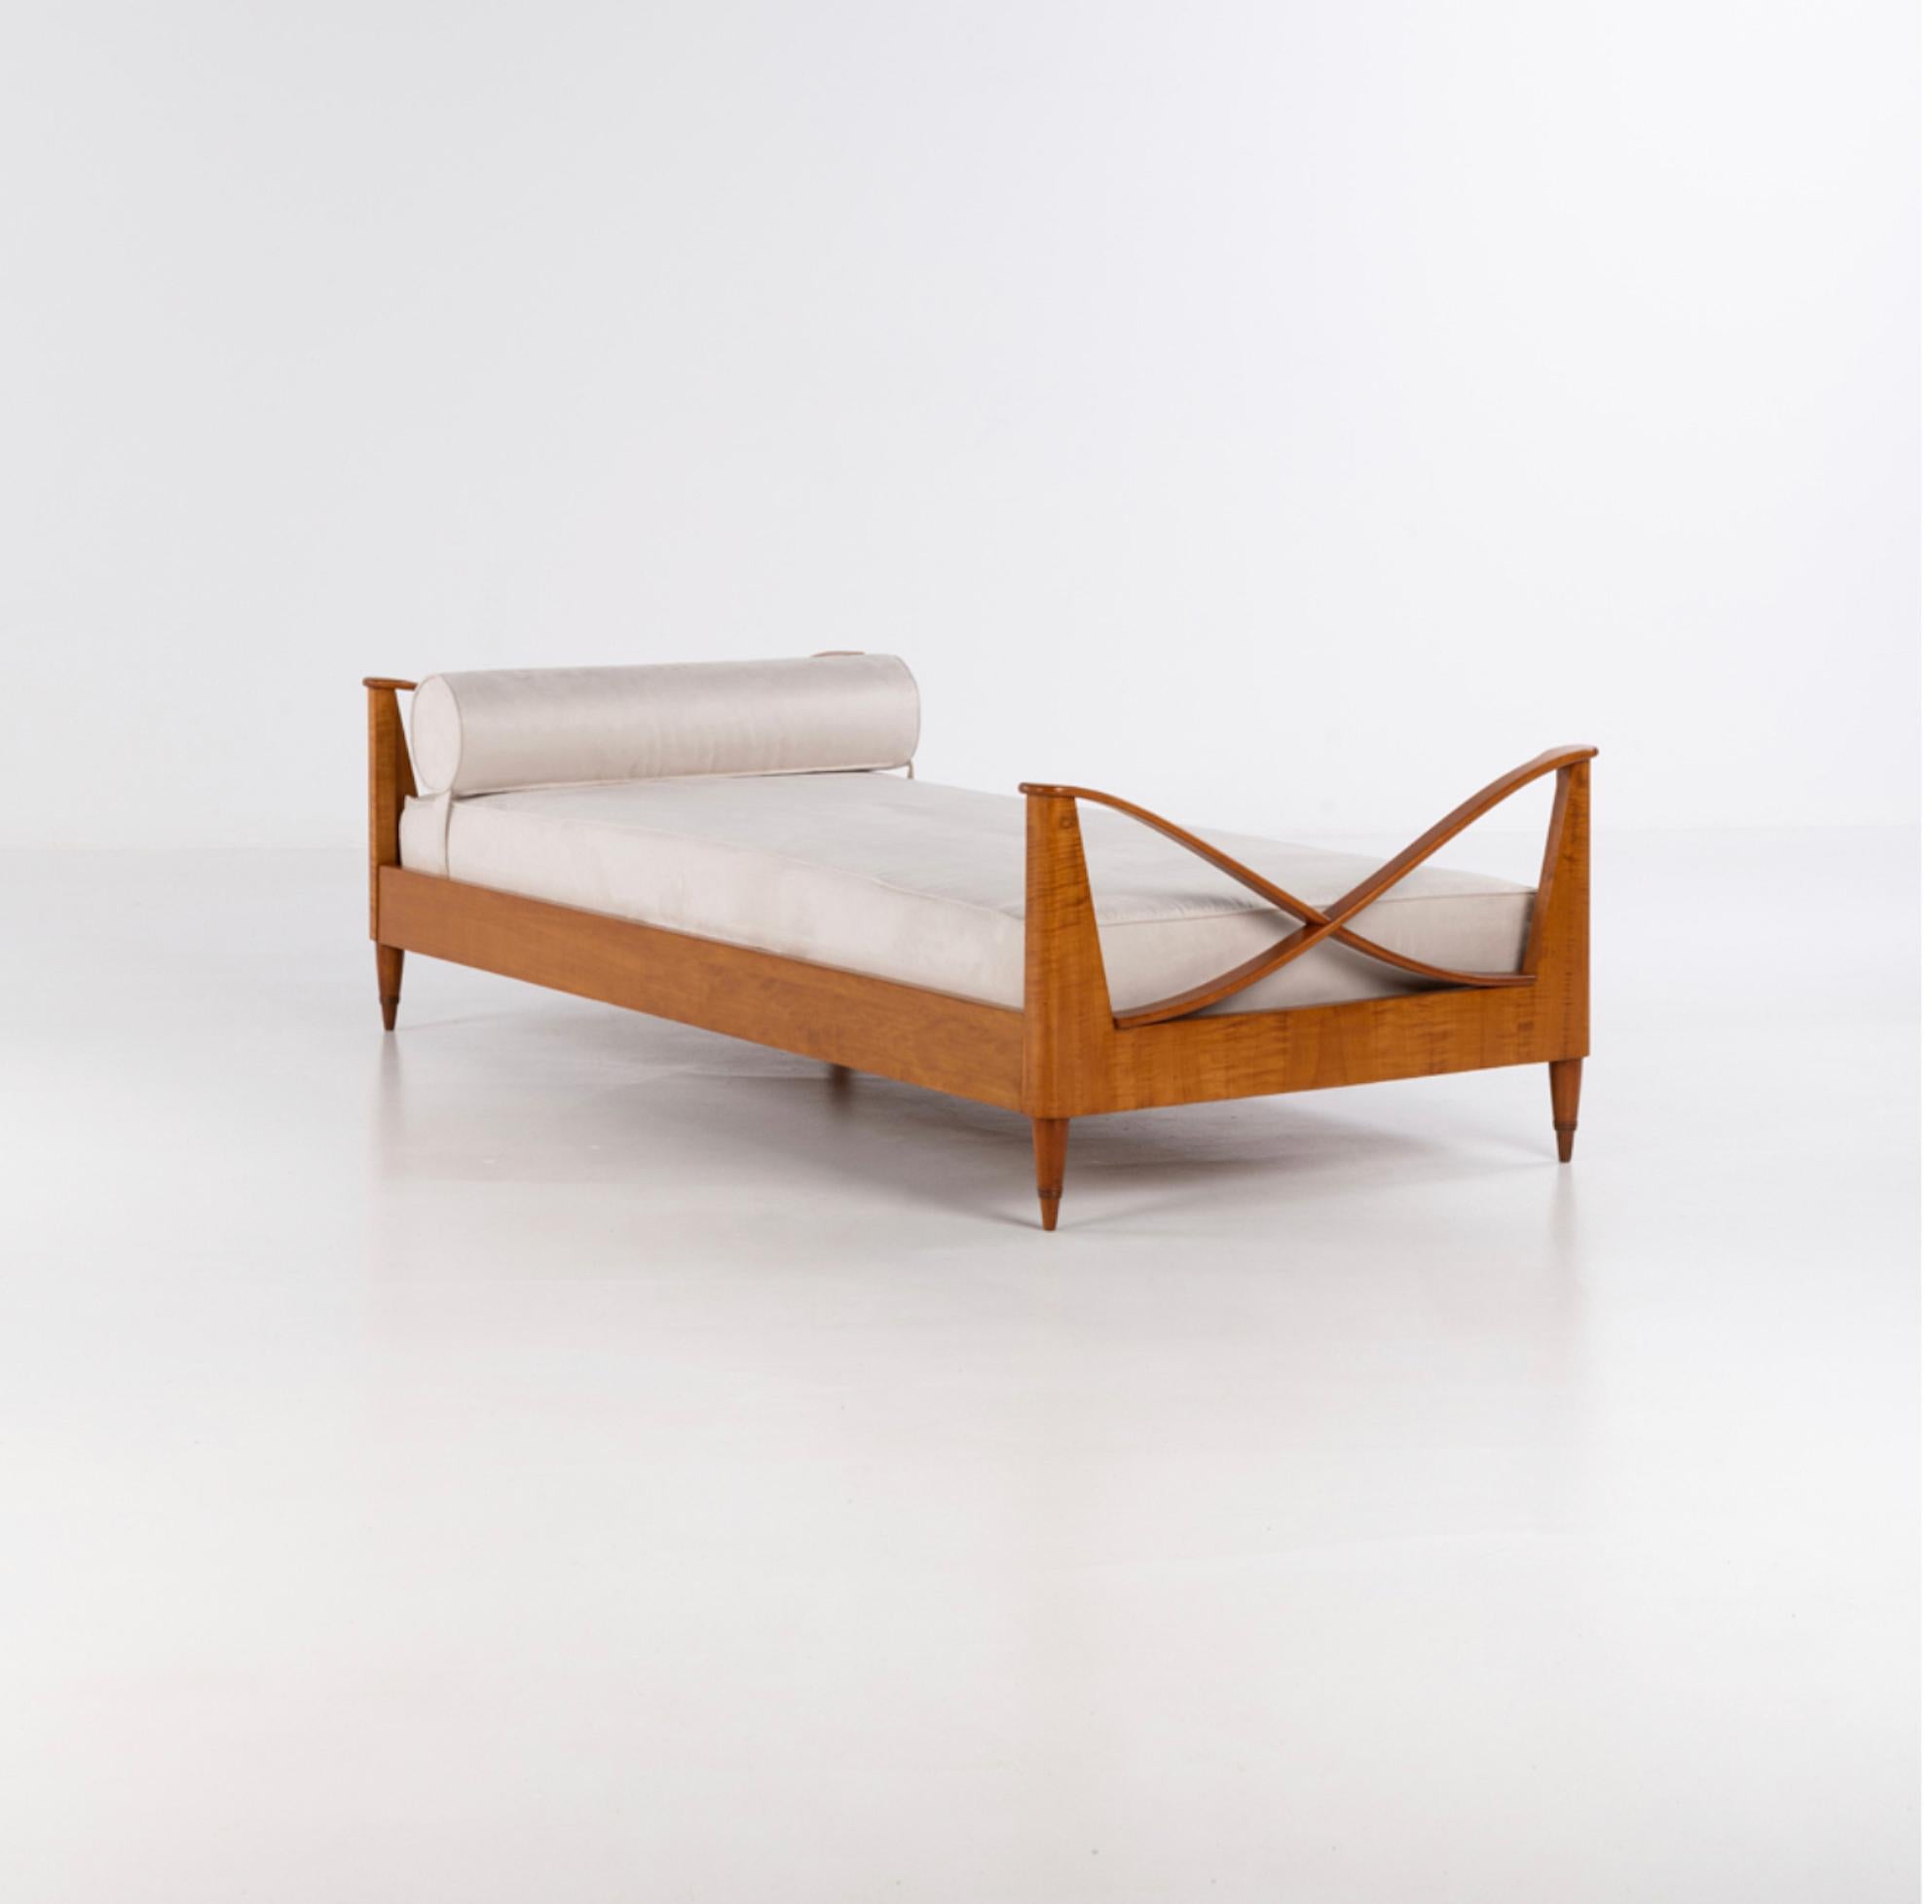 Paolo Buffa (1903-1970) 

Rare et très élégant lit de jour en bois
Noyer verni et tissu 
Modèle créé vers 1940 

H 58 × L 205 × L 95 cm

Paolo Buffa était un designer de meubles italien qui a défini sa propre esthétique de design unique pour devenir